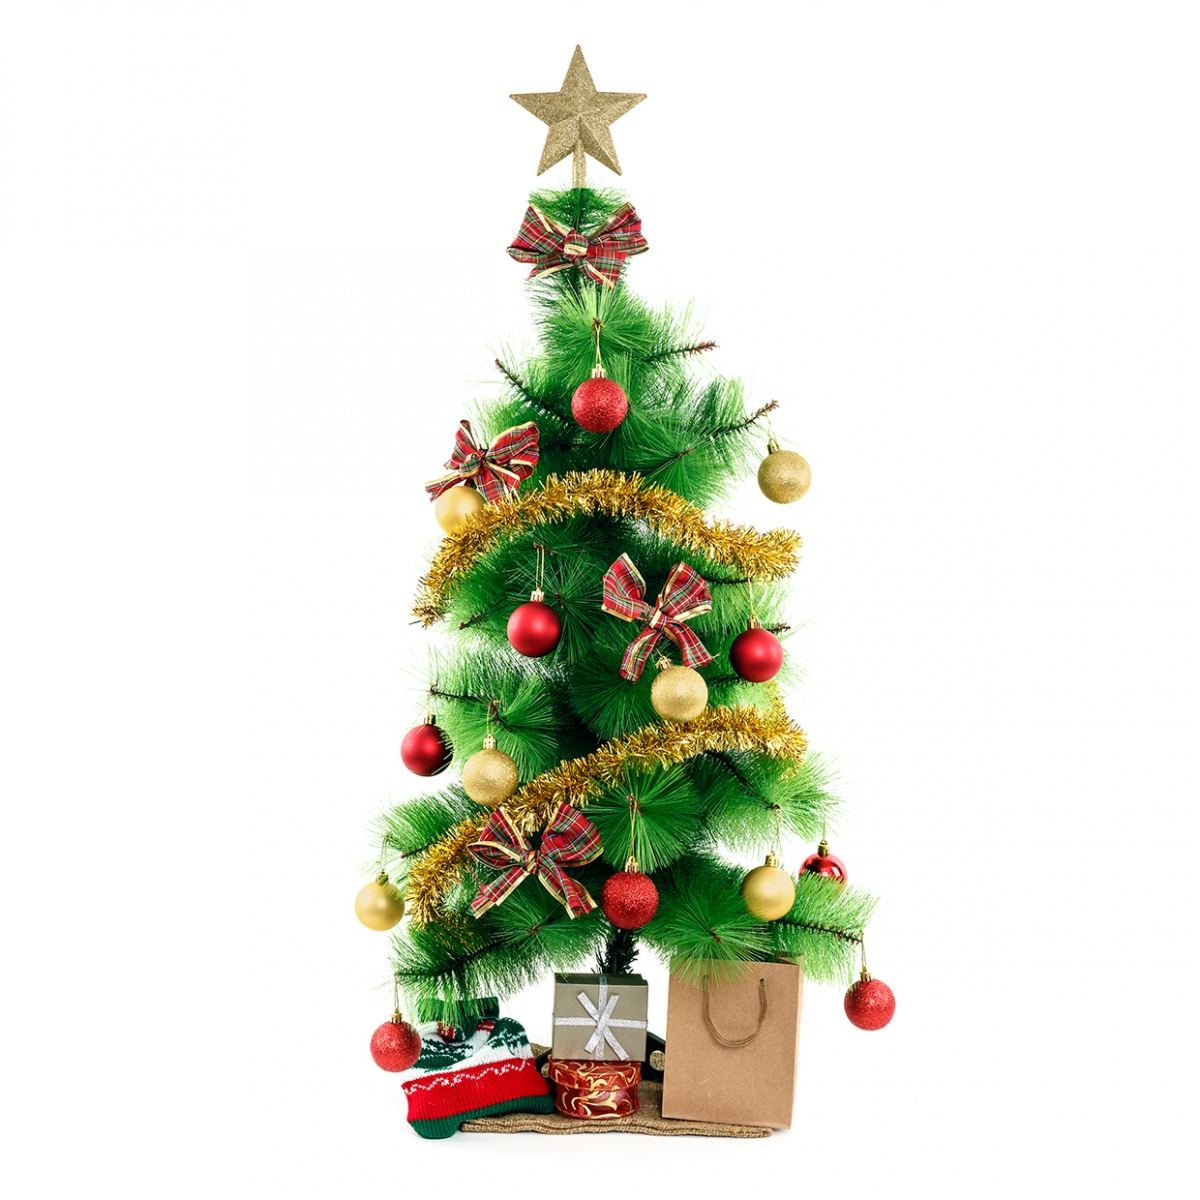 Imagen en la que se ve un árbol de Navidad